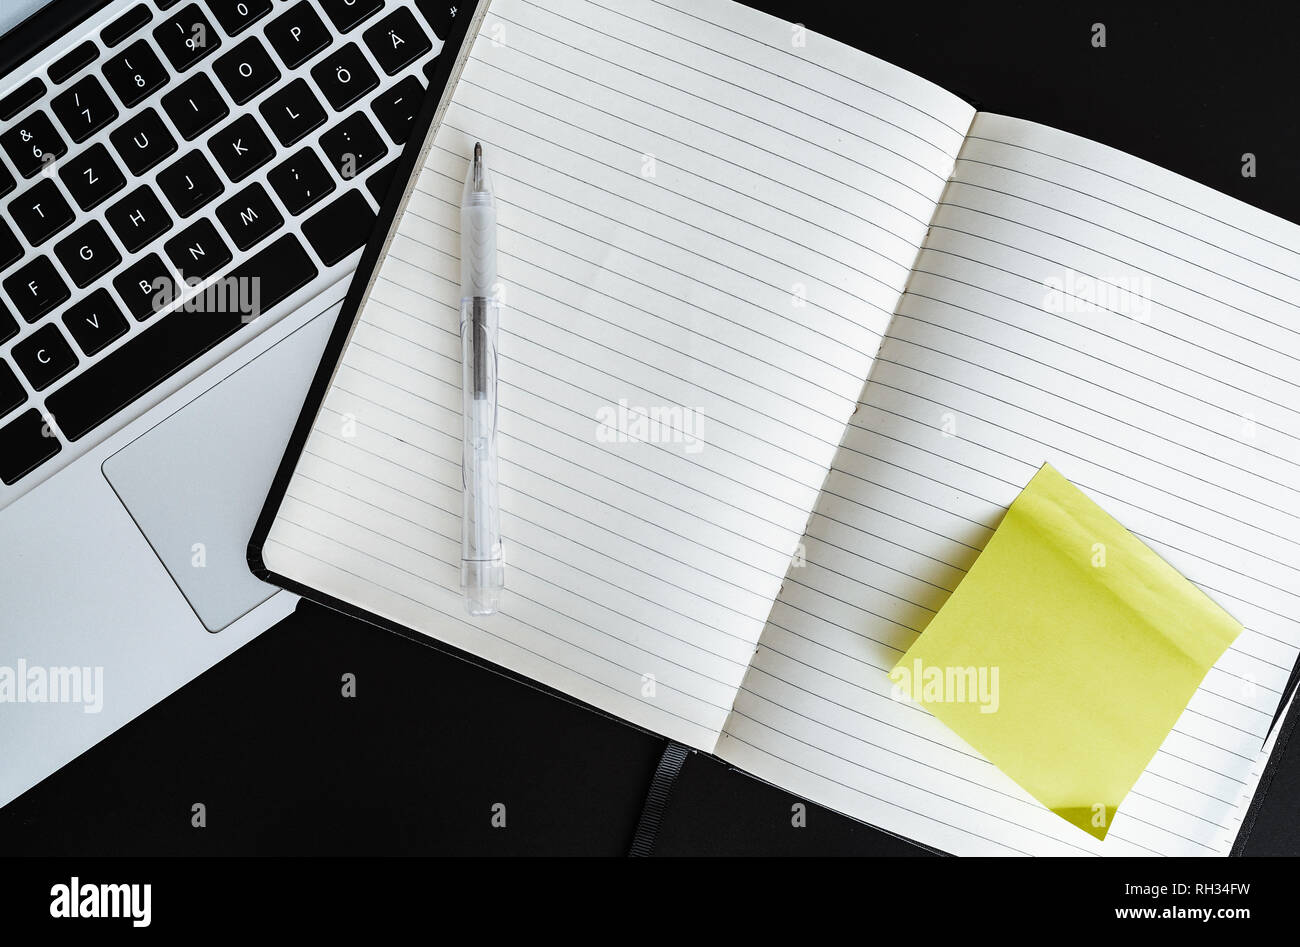 Abrir notas en blanco con nota adhesiva amarilla junto al ordenador portátil Foto de stock